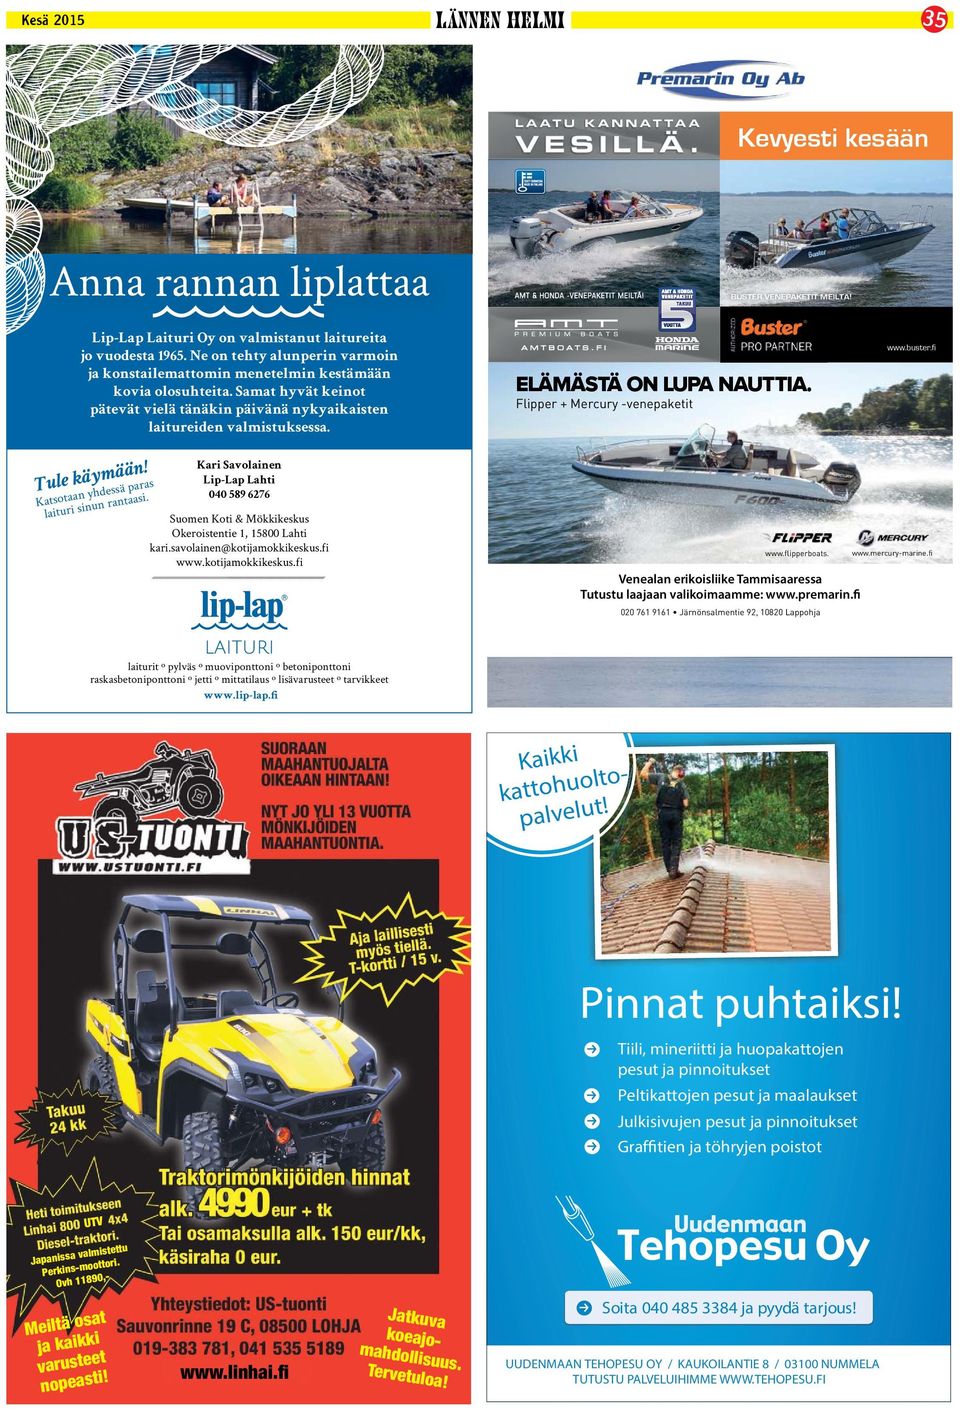 FI ELÄMÄSTÄ ON LUPA NAUTTIA. Flipper + Mercury -venepaketit www.buster.fi Tule käymään! Katsotaan yhdessä paras laituri sinun rantaasi.